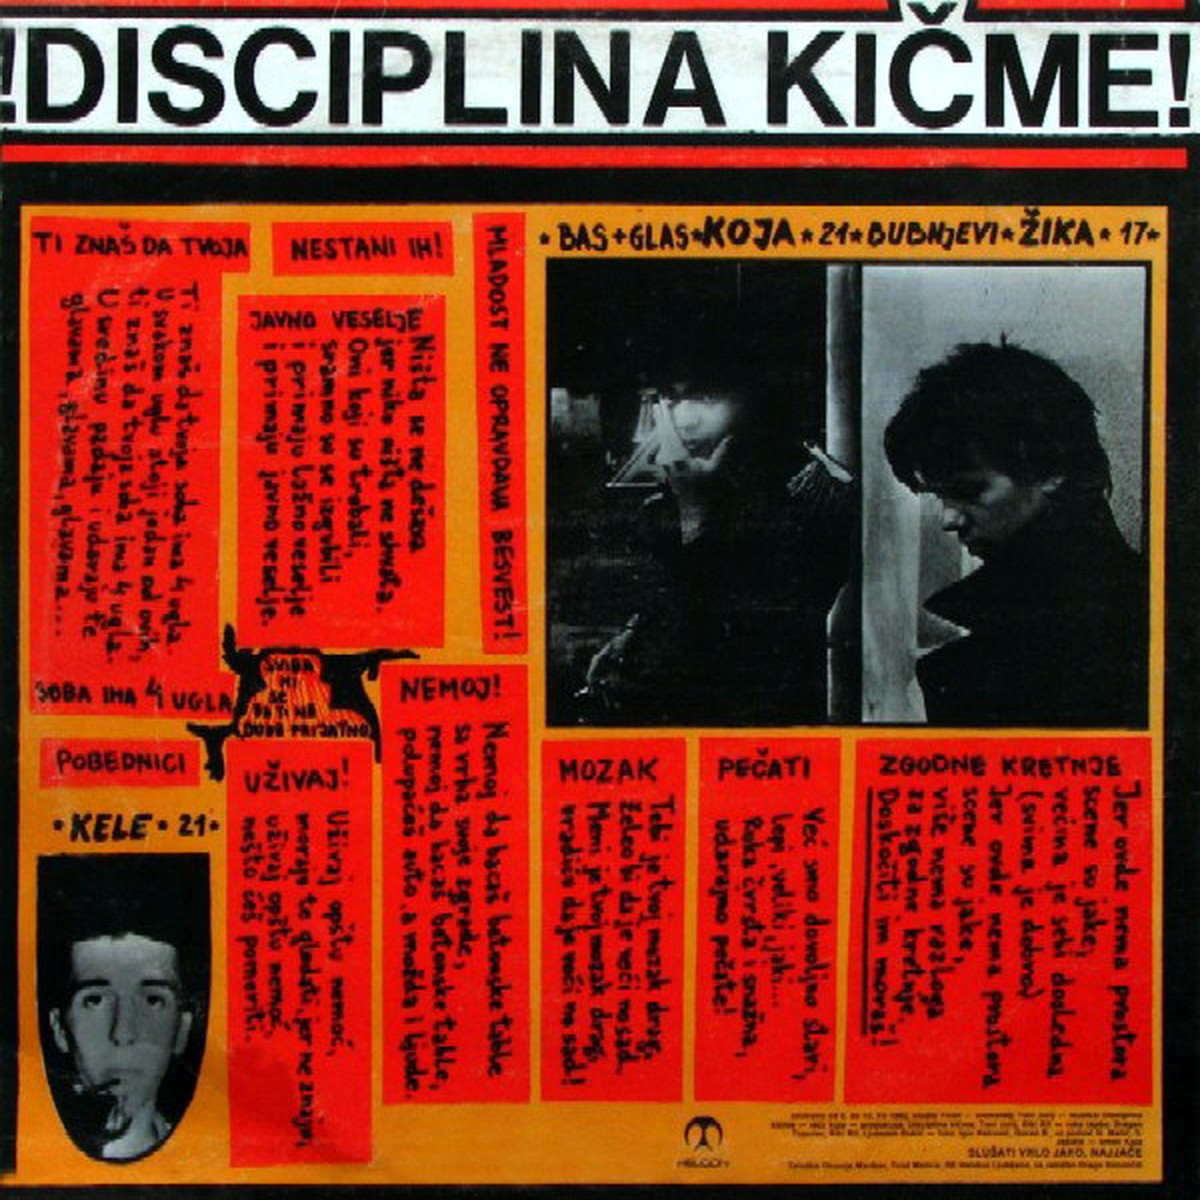 Disciplina Kicme 1983 Svidja mi se b